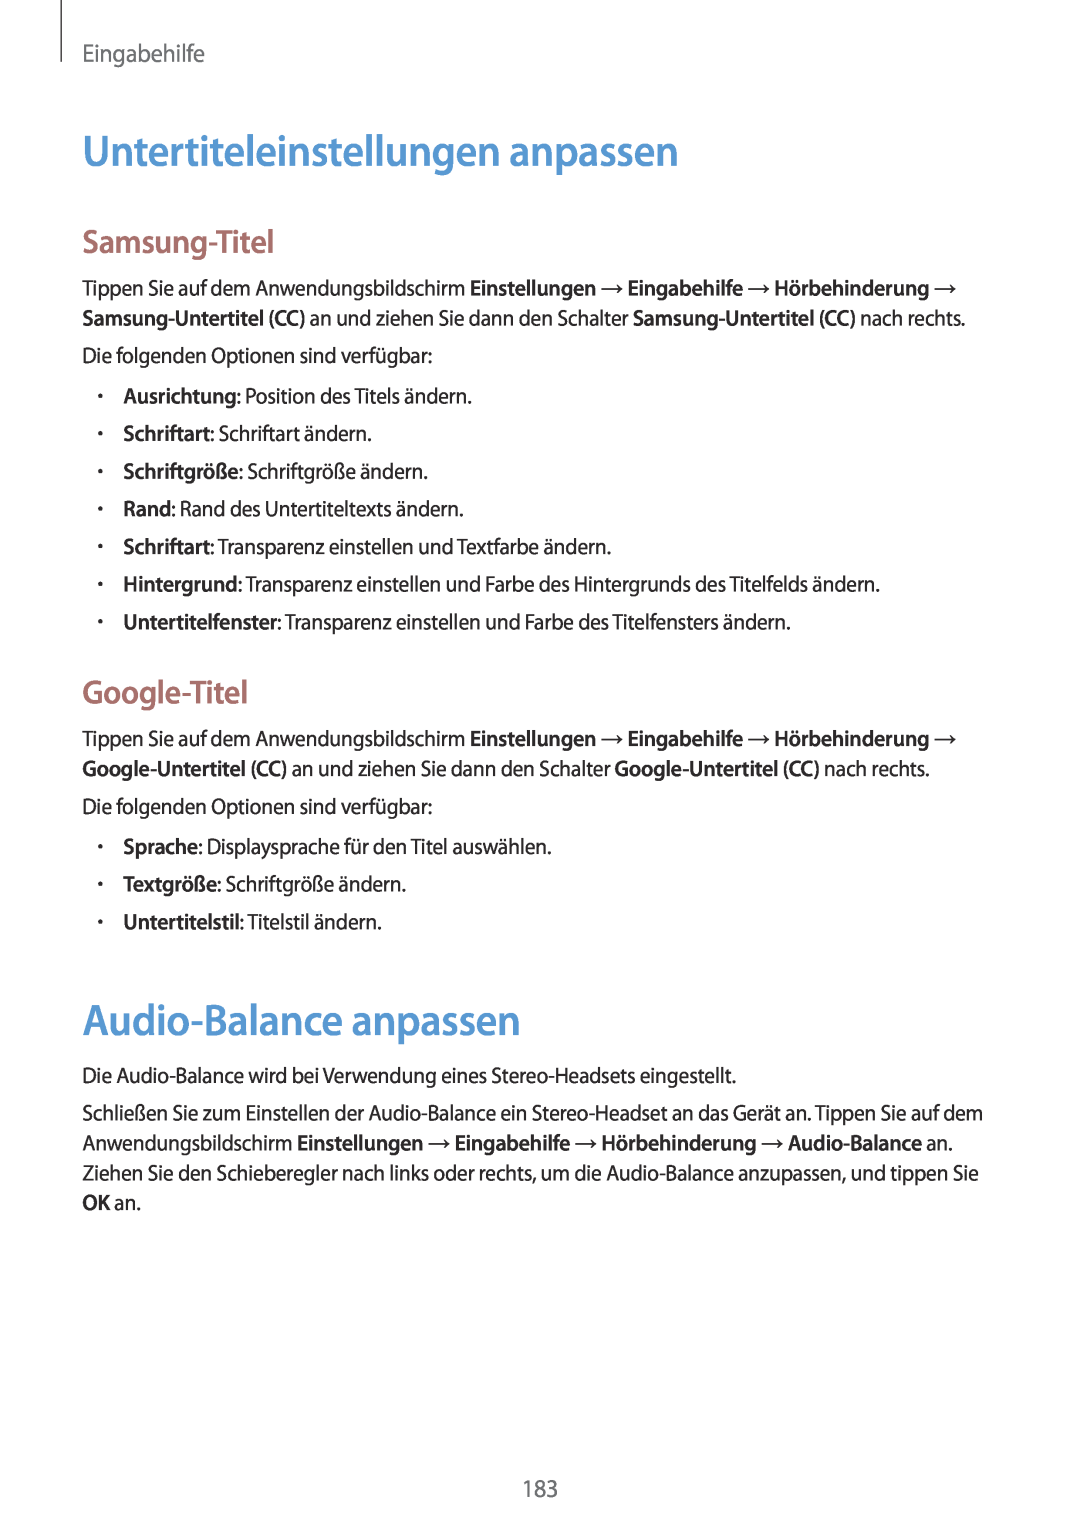 Samsung SM-G901FZDADTM Untertiteleinstellungen anpassen, Audio-Balance anpassen, Samsung-Titel, Google-Titel, Eingabehilfe 